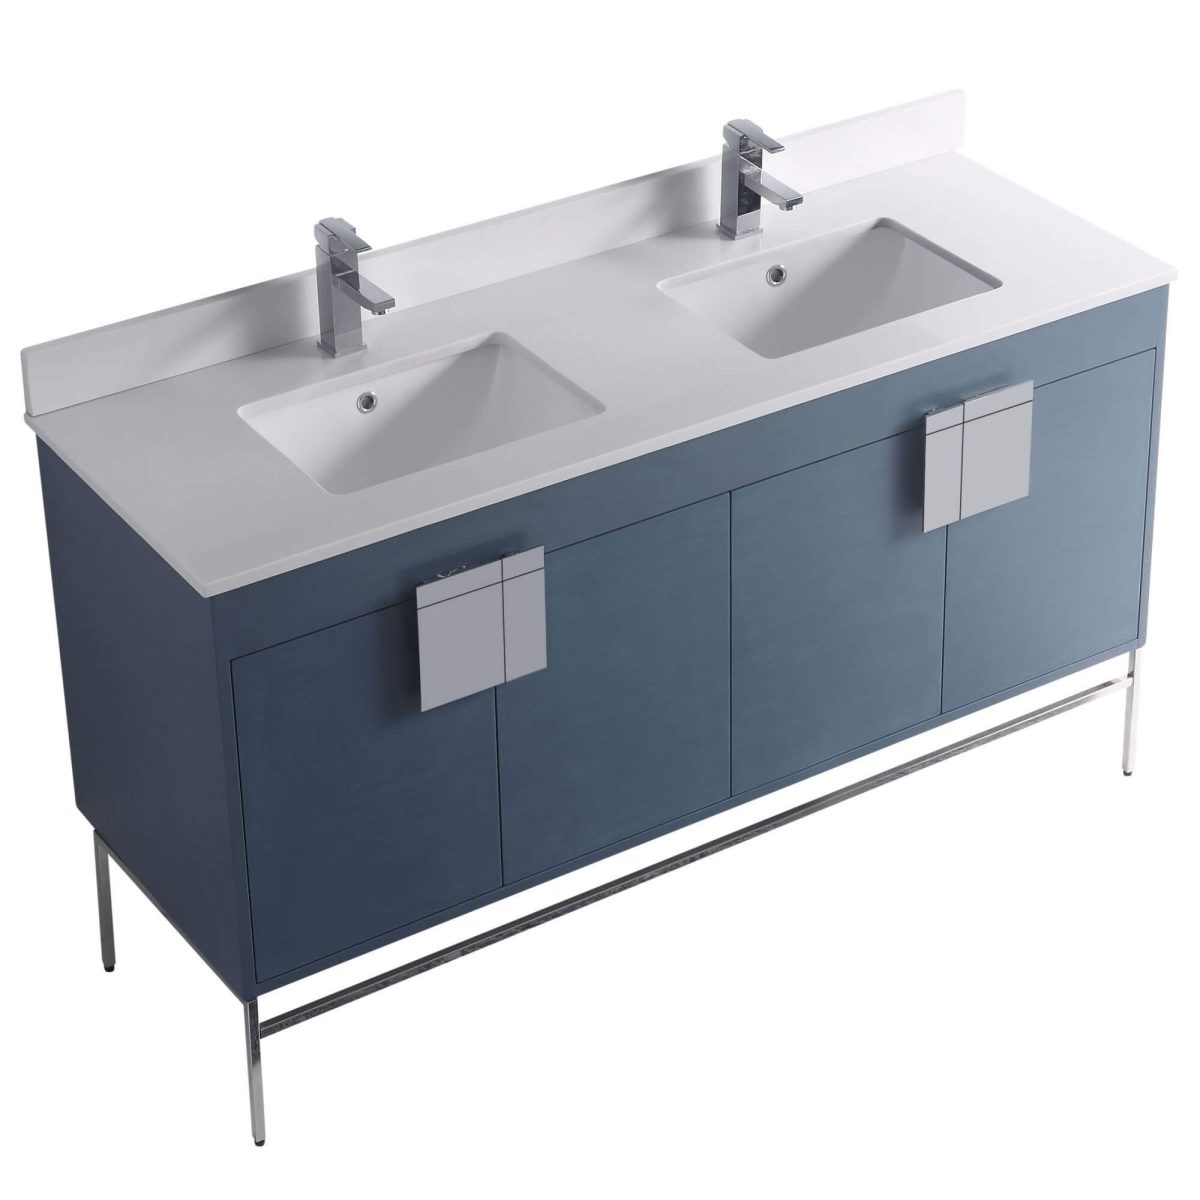 Shawbridge 60" Modern Double Bathroom Vanity  French Blue with Polished Chrome Hardware